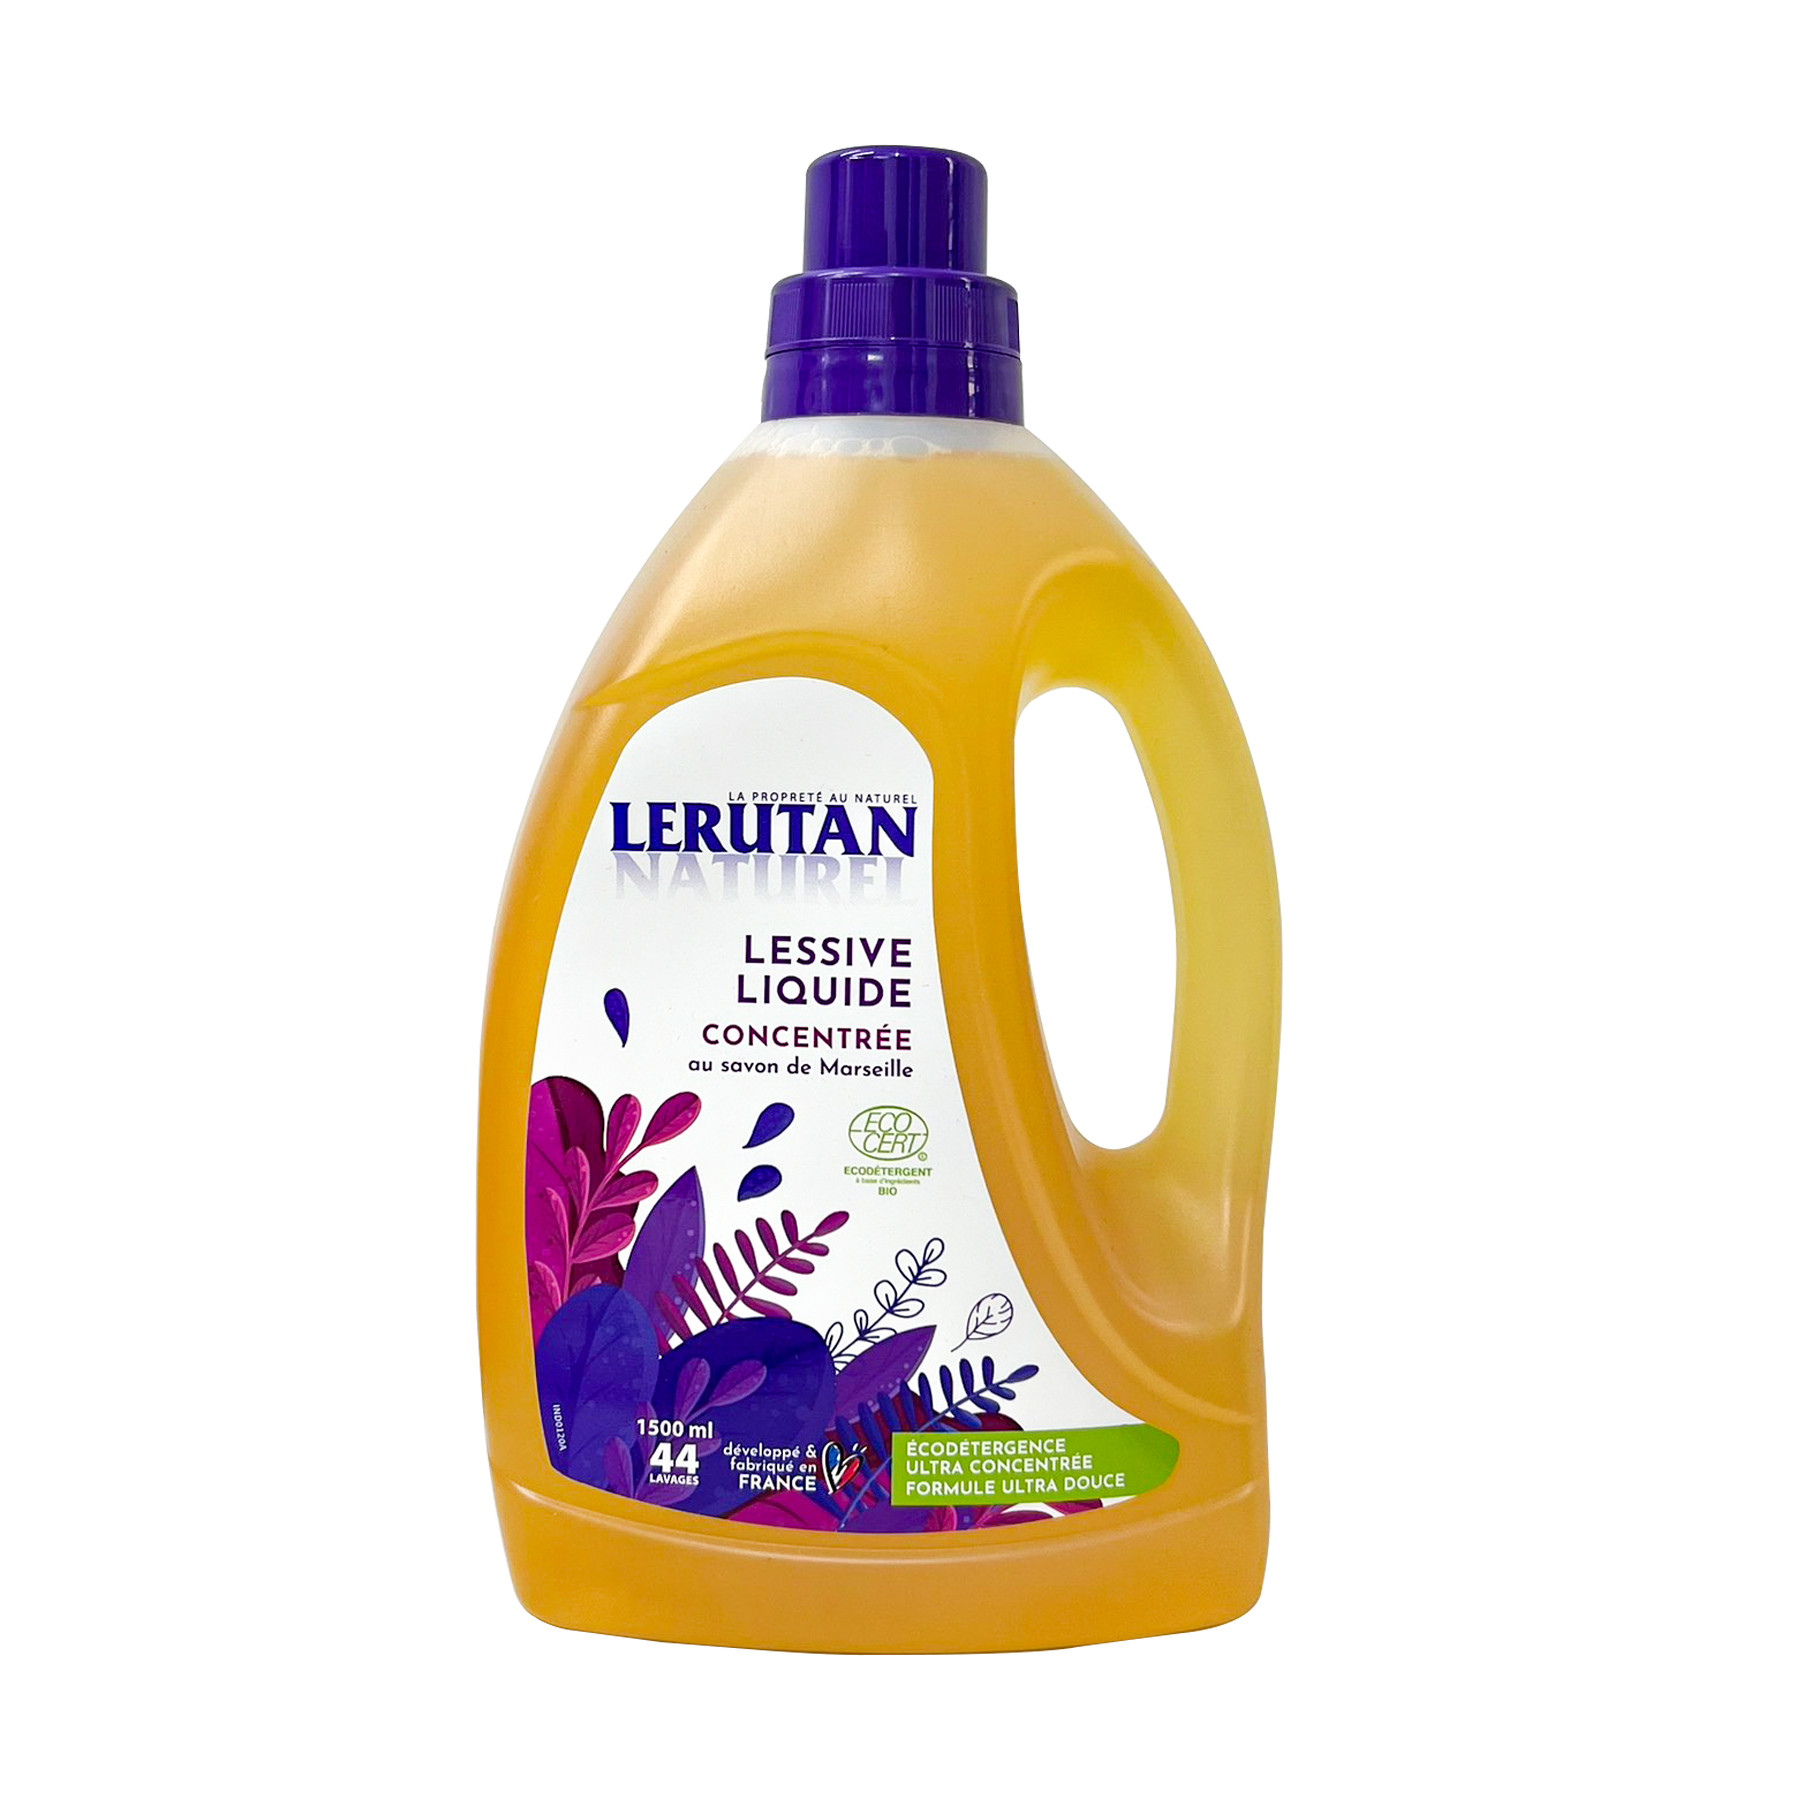 Nước giặt đậm đặc hữu cơ cam oải hương Lerutan 1,5L